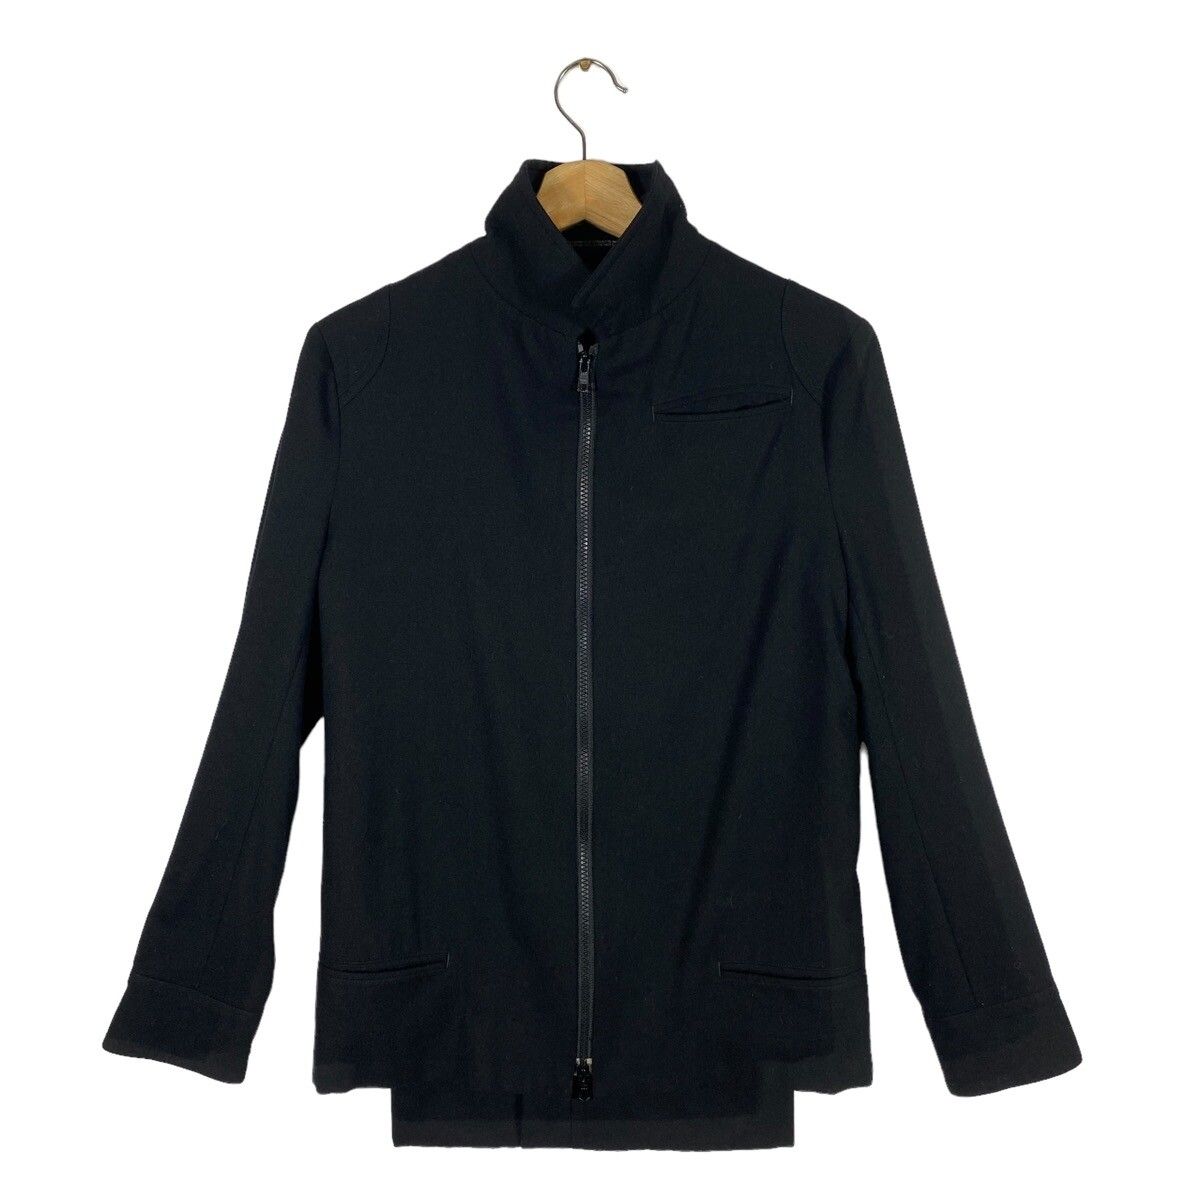 Vintage 90s Y's Yohji Yamamoto Wool Jacket Zipper Size 1 - 2